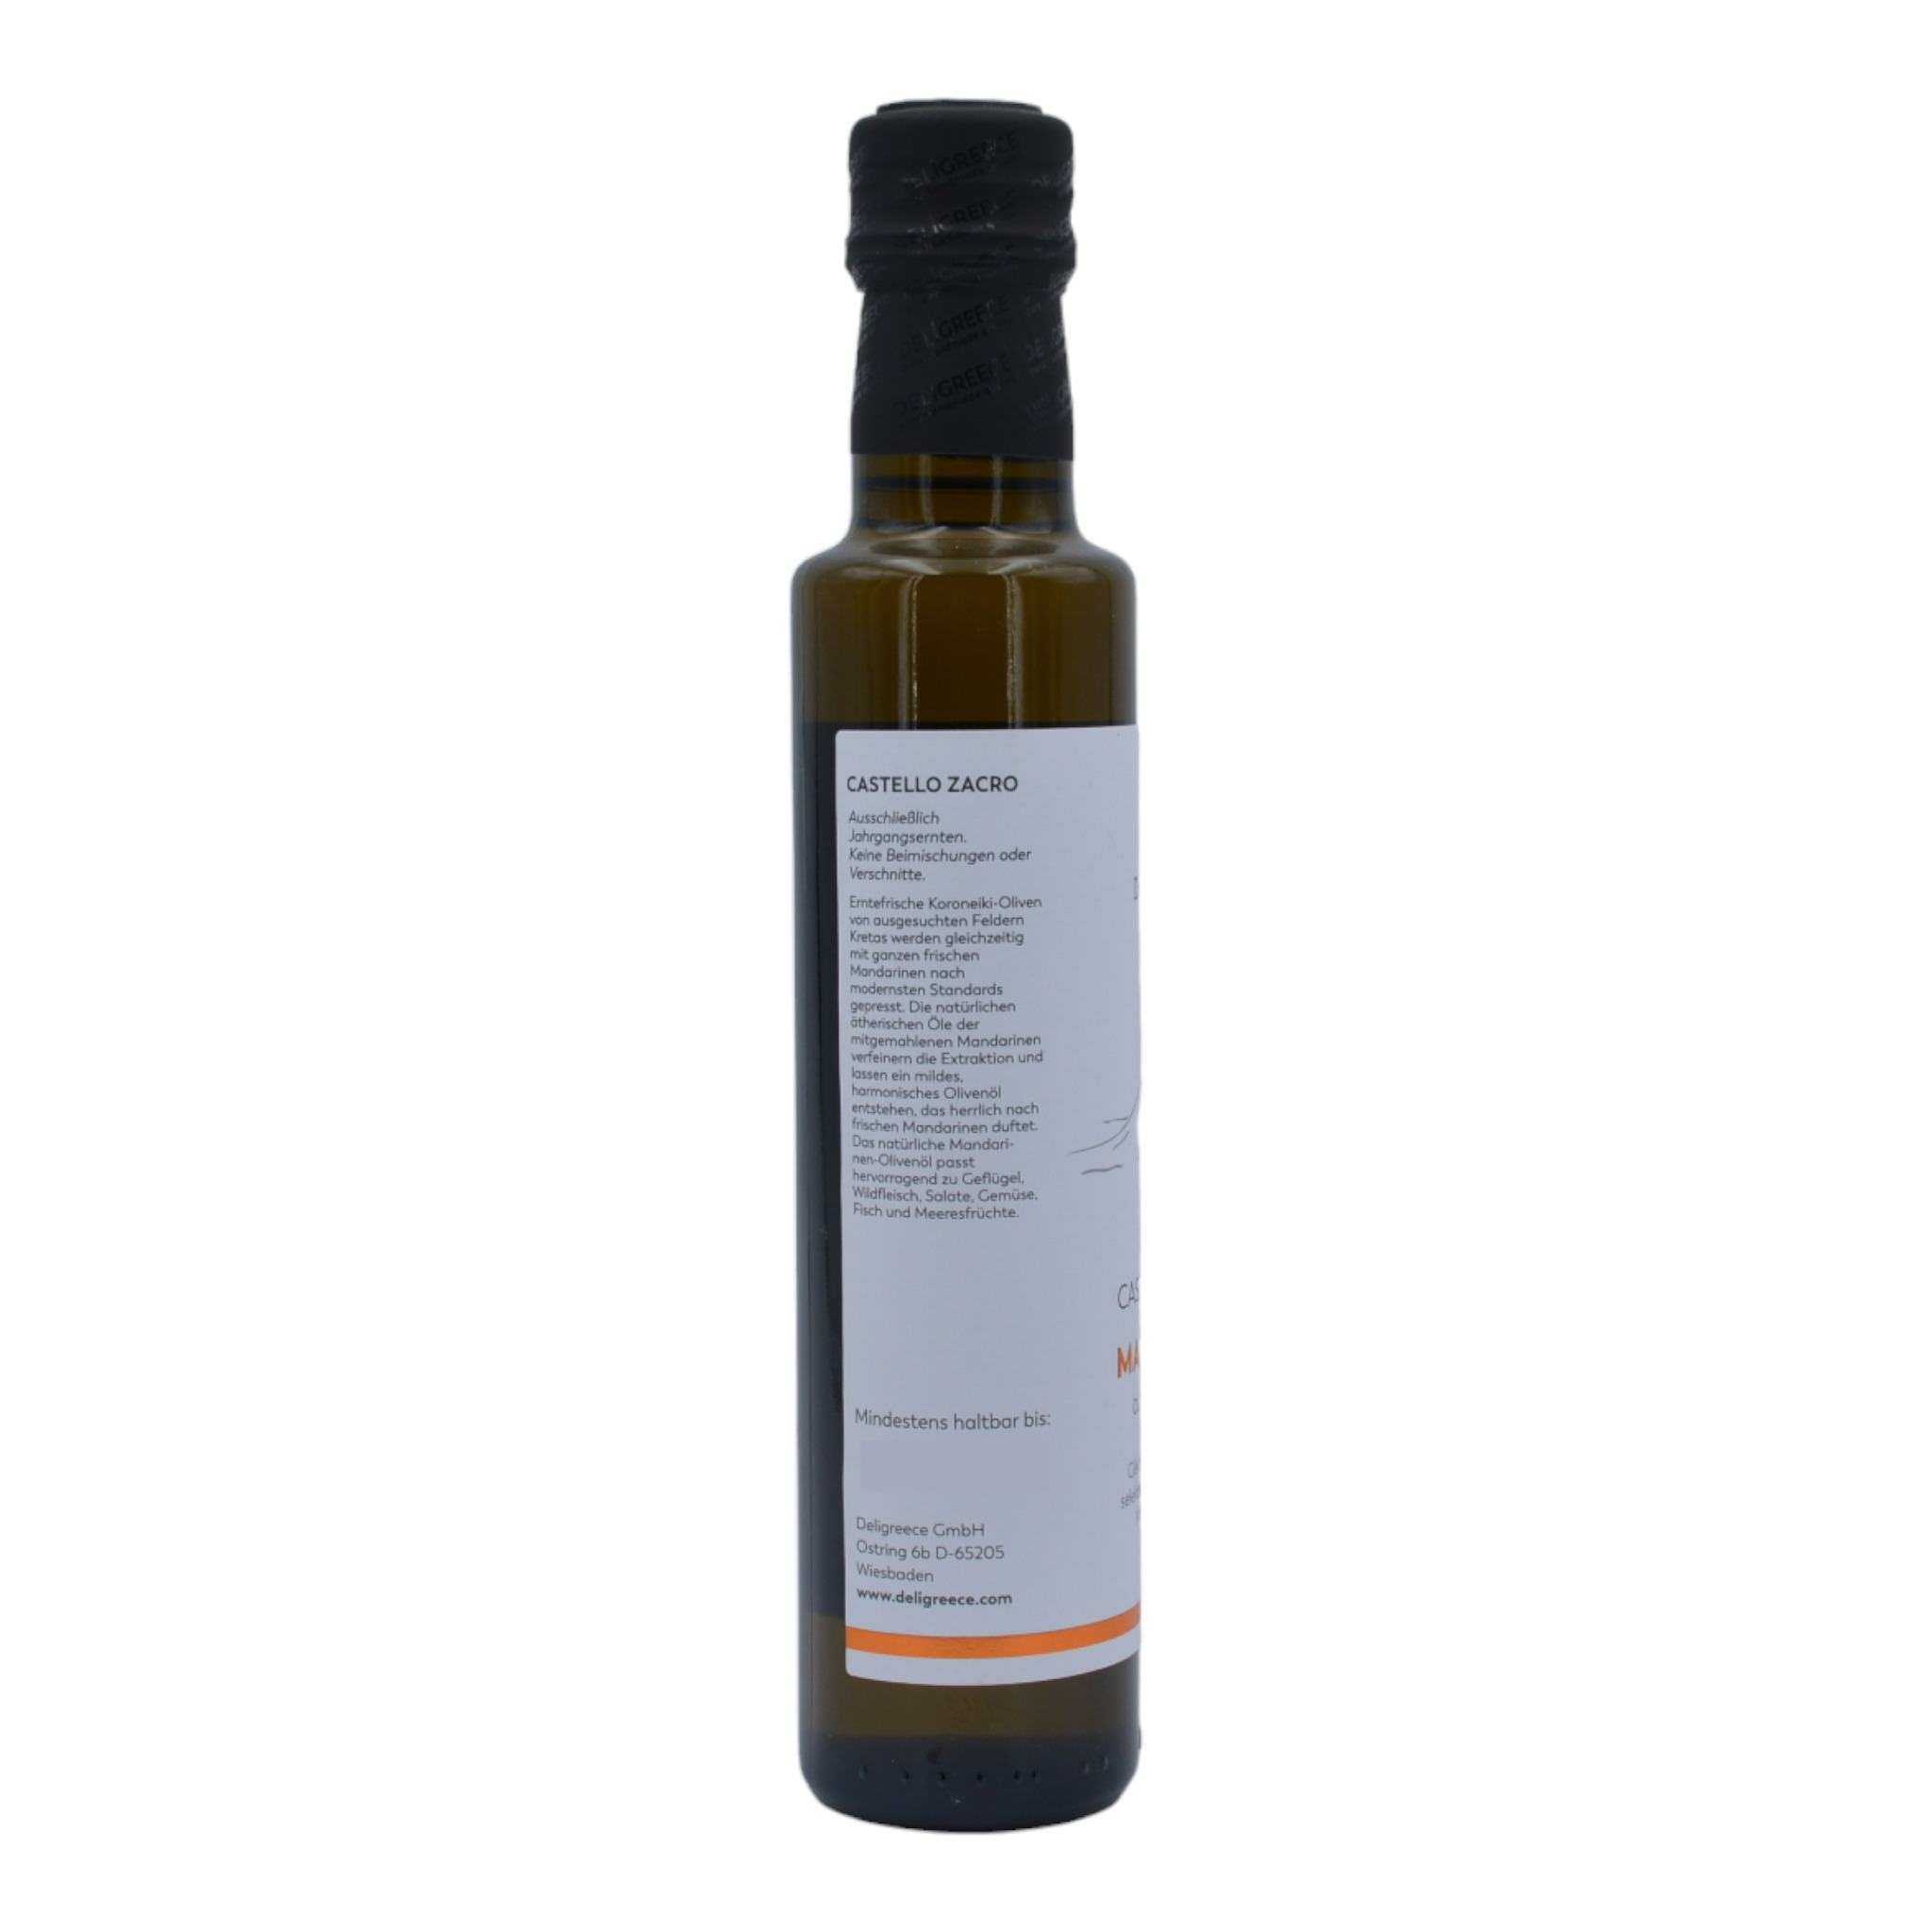 4260054323203Deligreece Castello Zacro Mandarinen Oliveöl aus Kreta s2